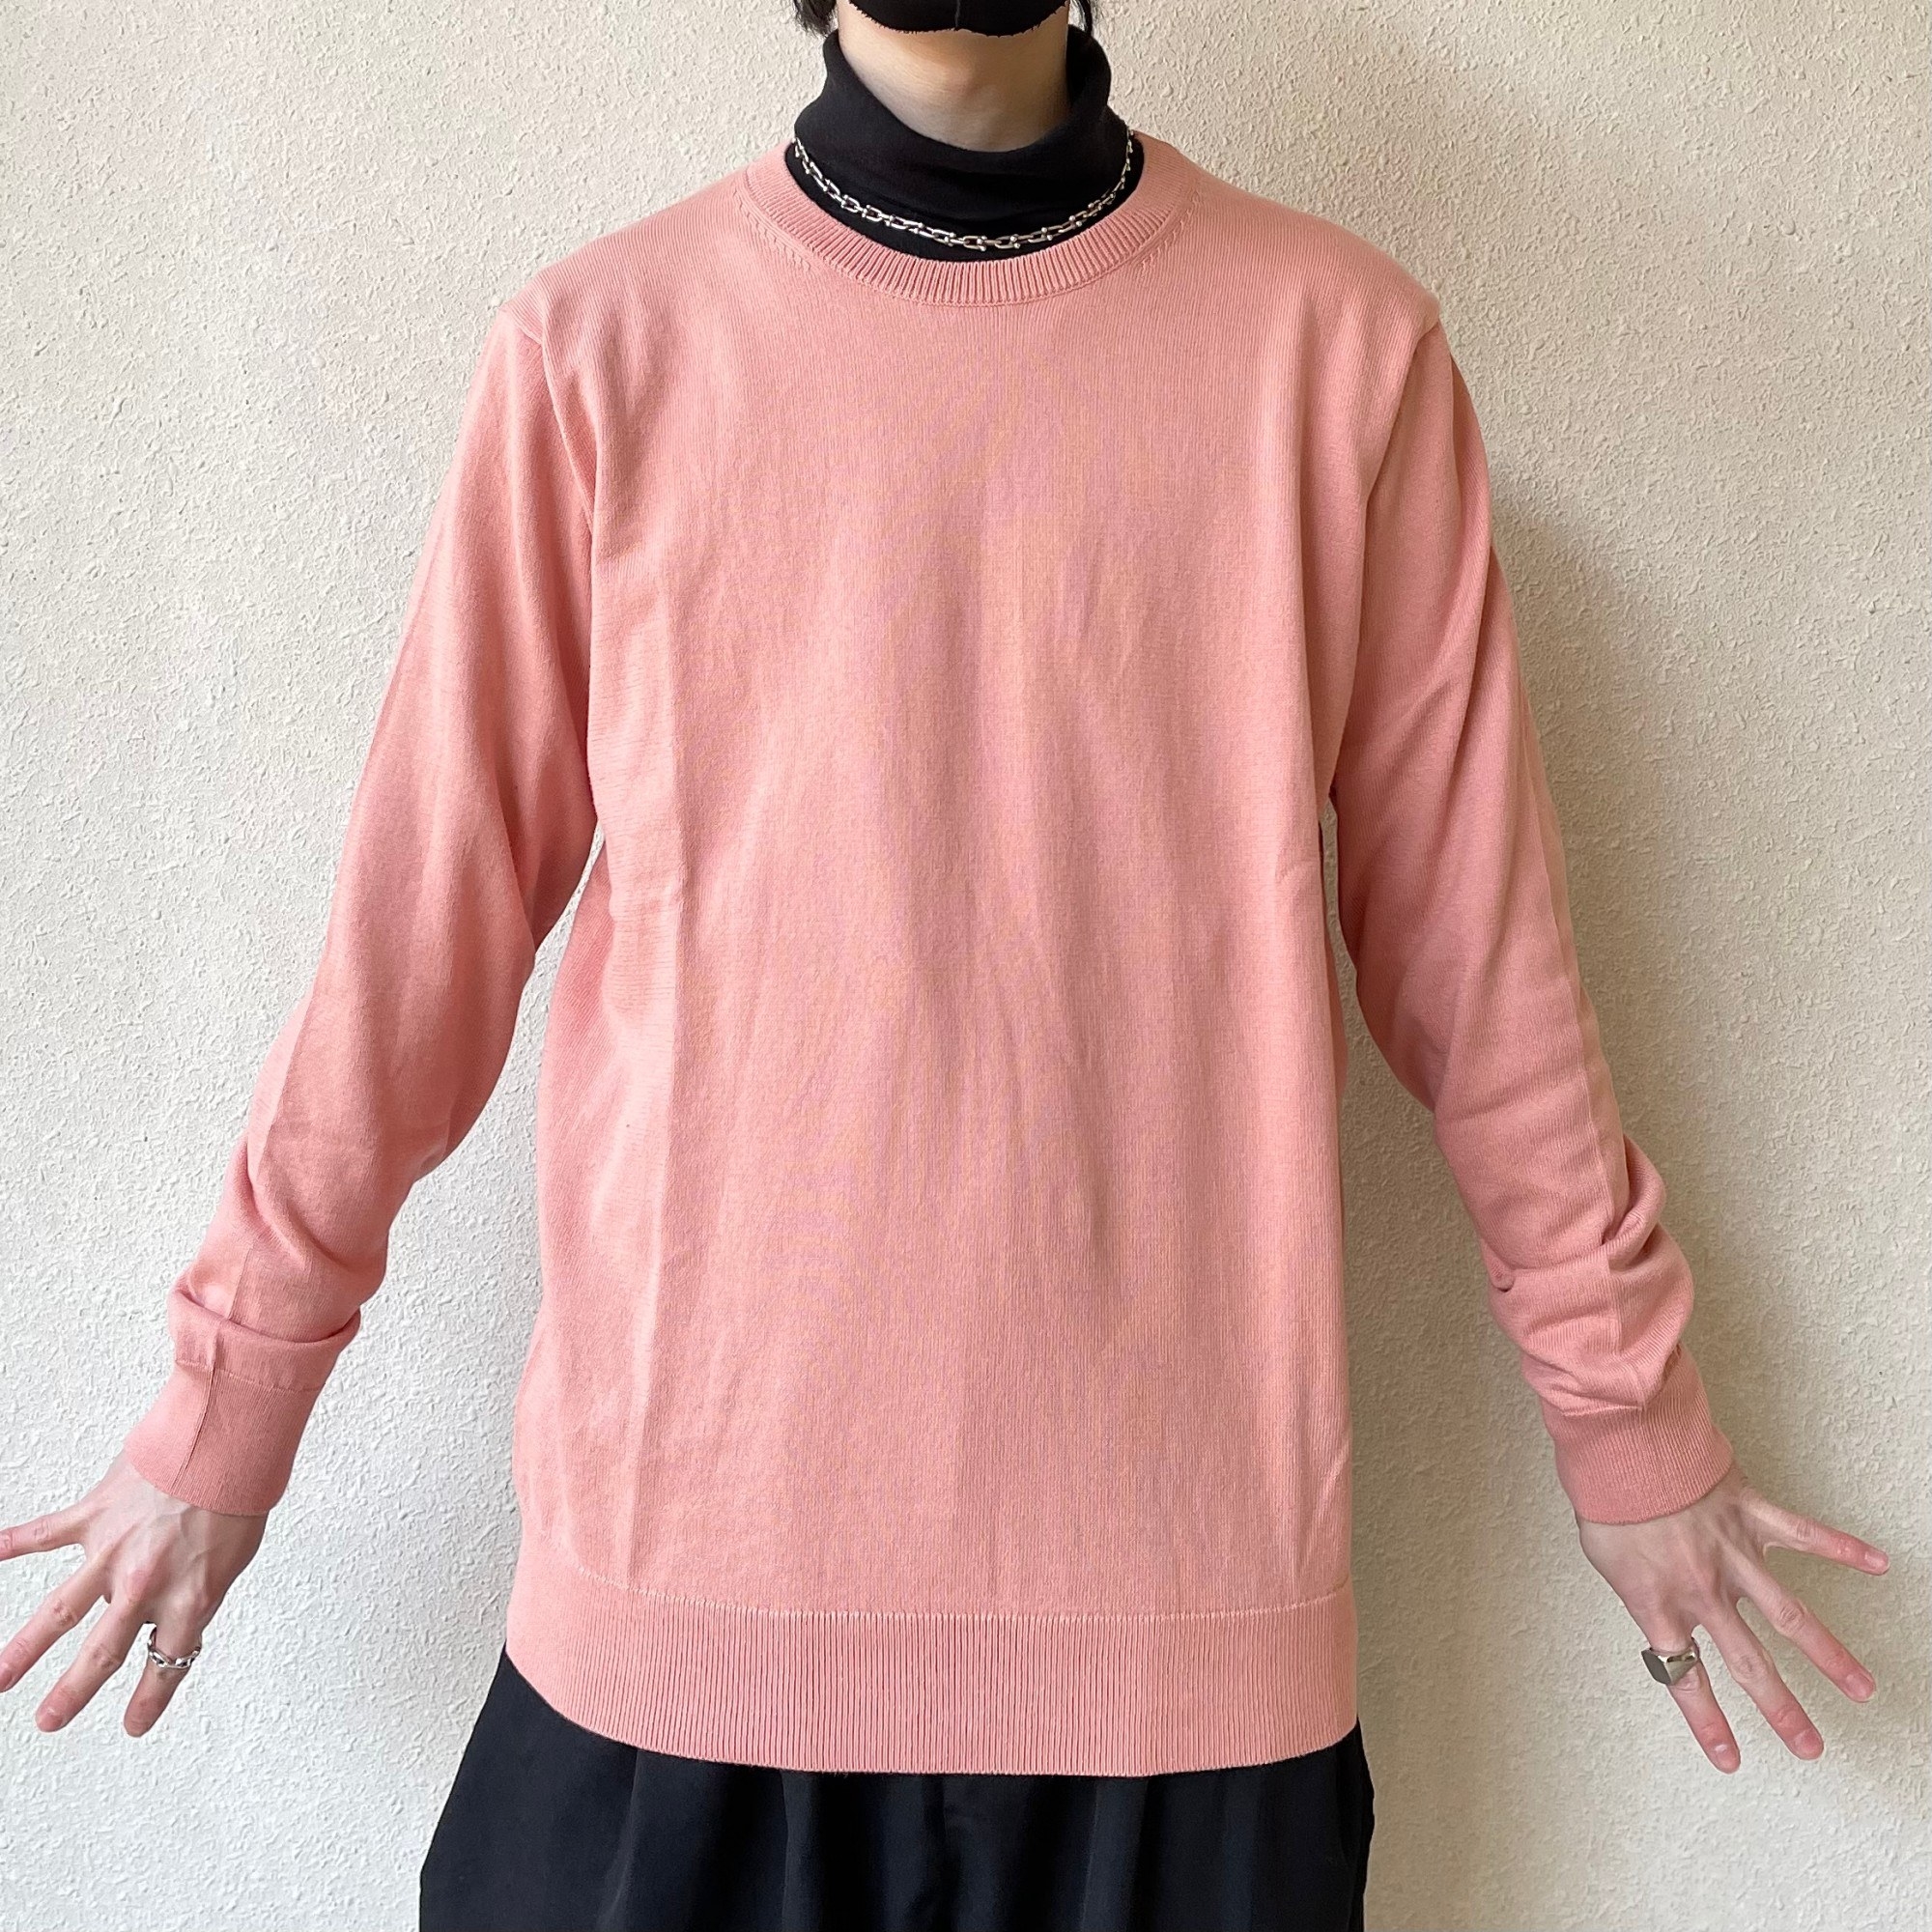 UNIQLO（ユニクロ）のおすすめのメンズアイテム「ウォッシャブルコットンクルーネックセーター」